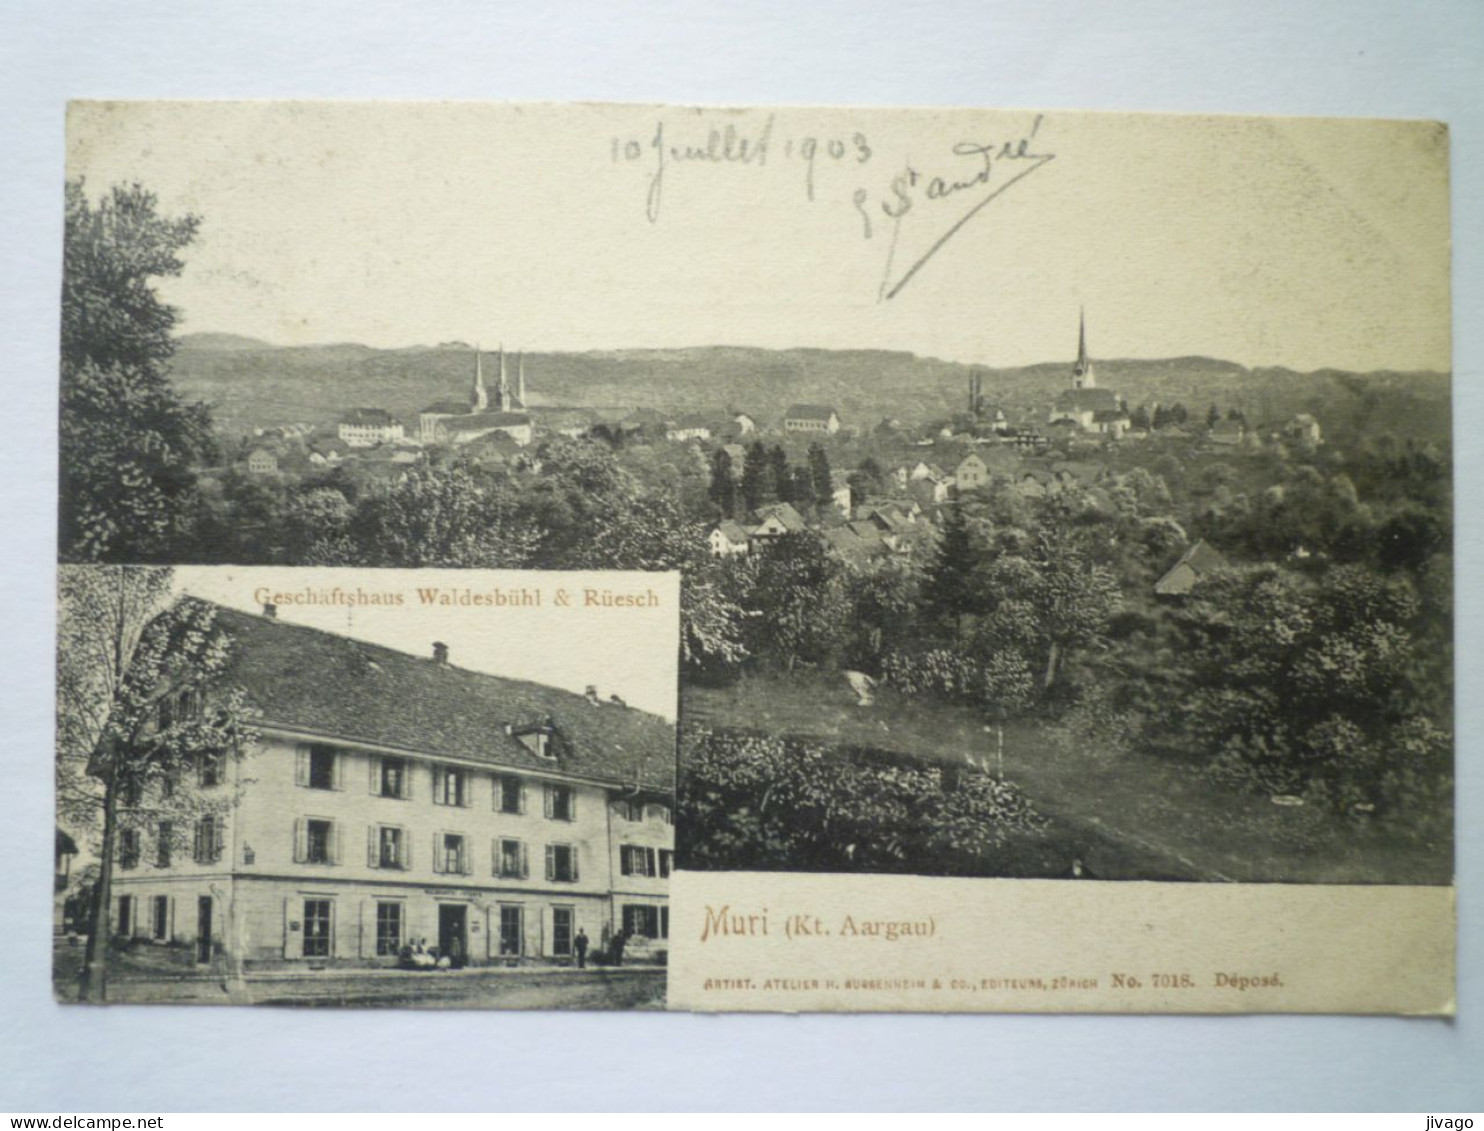 2023 - 1722  MURI  (Kt. Aargau)  :  Geschäftshaus  WALDESBÜHL  &  RÜESCH   1903   XXX - Muri